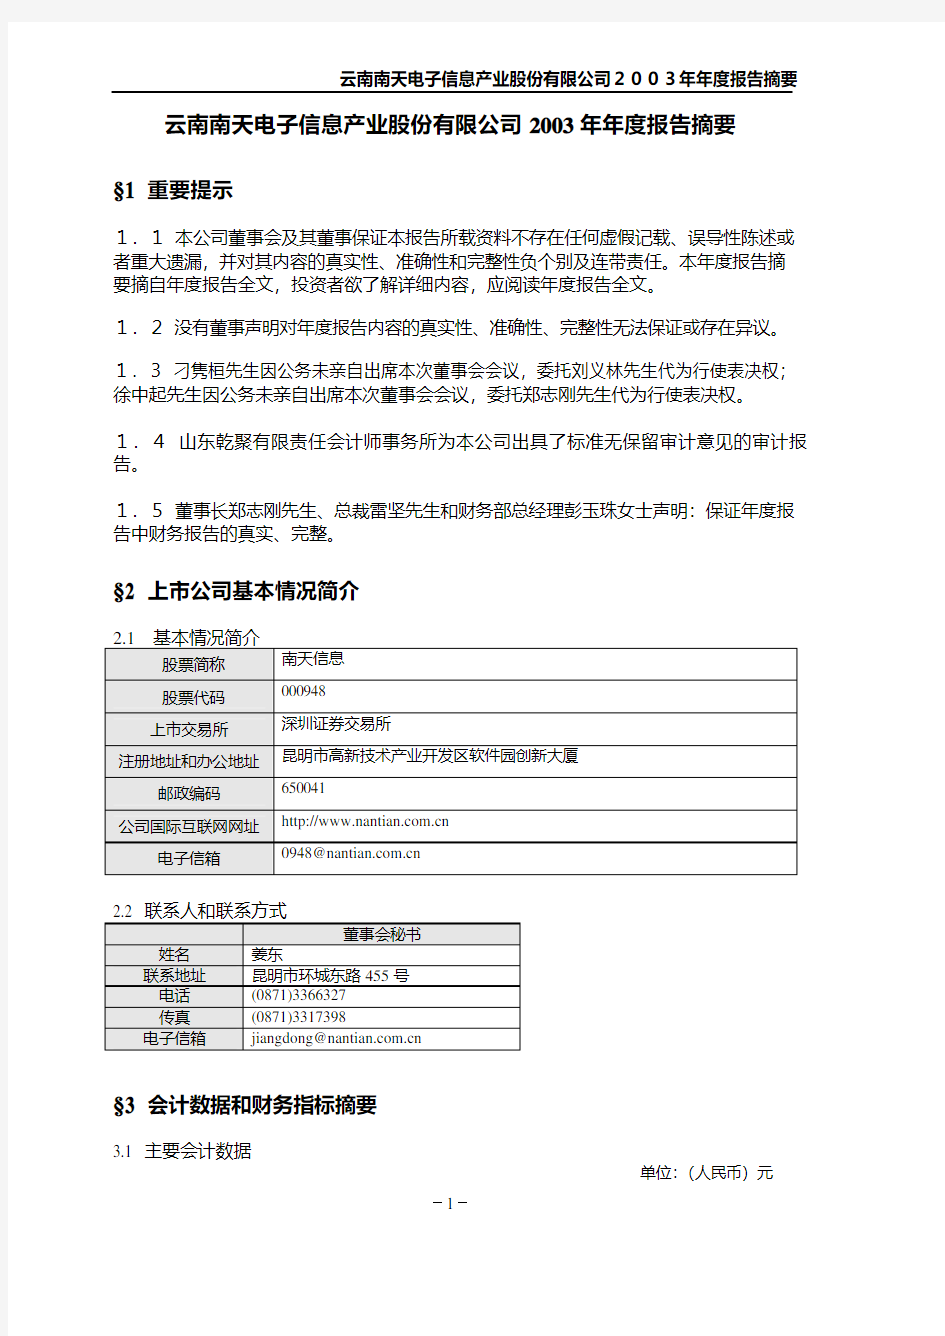 云南南天电子信息产业股份有限公司2003年年度报告摘要